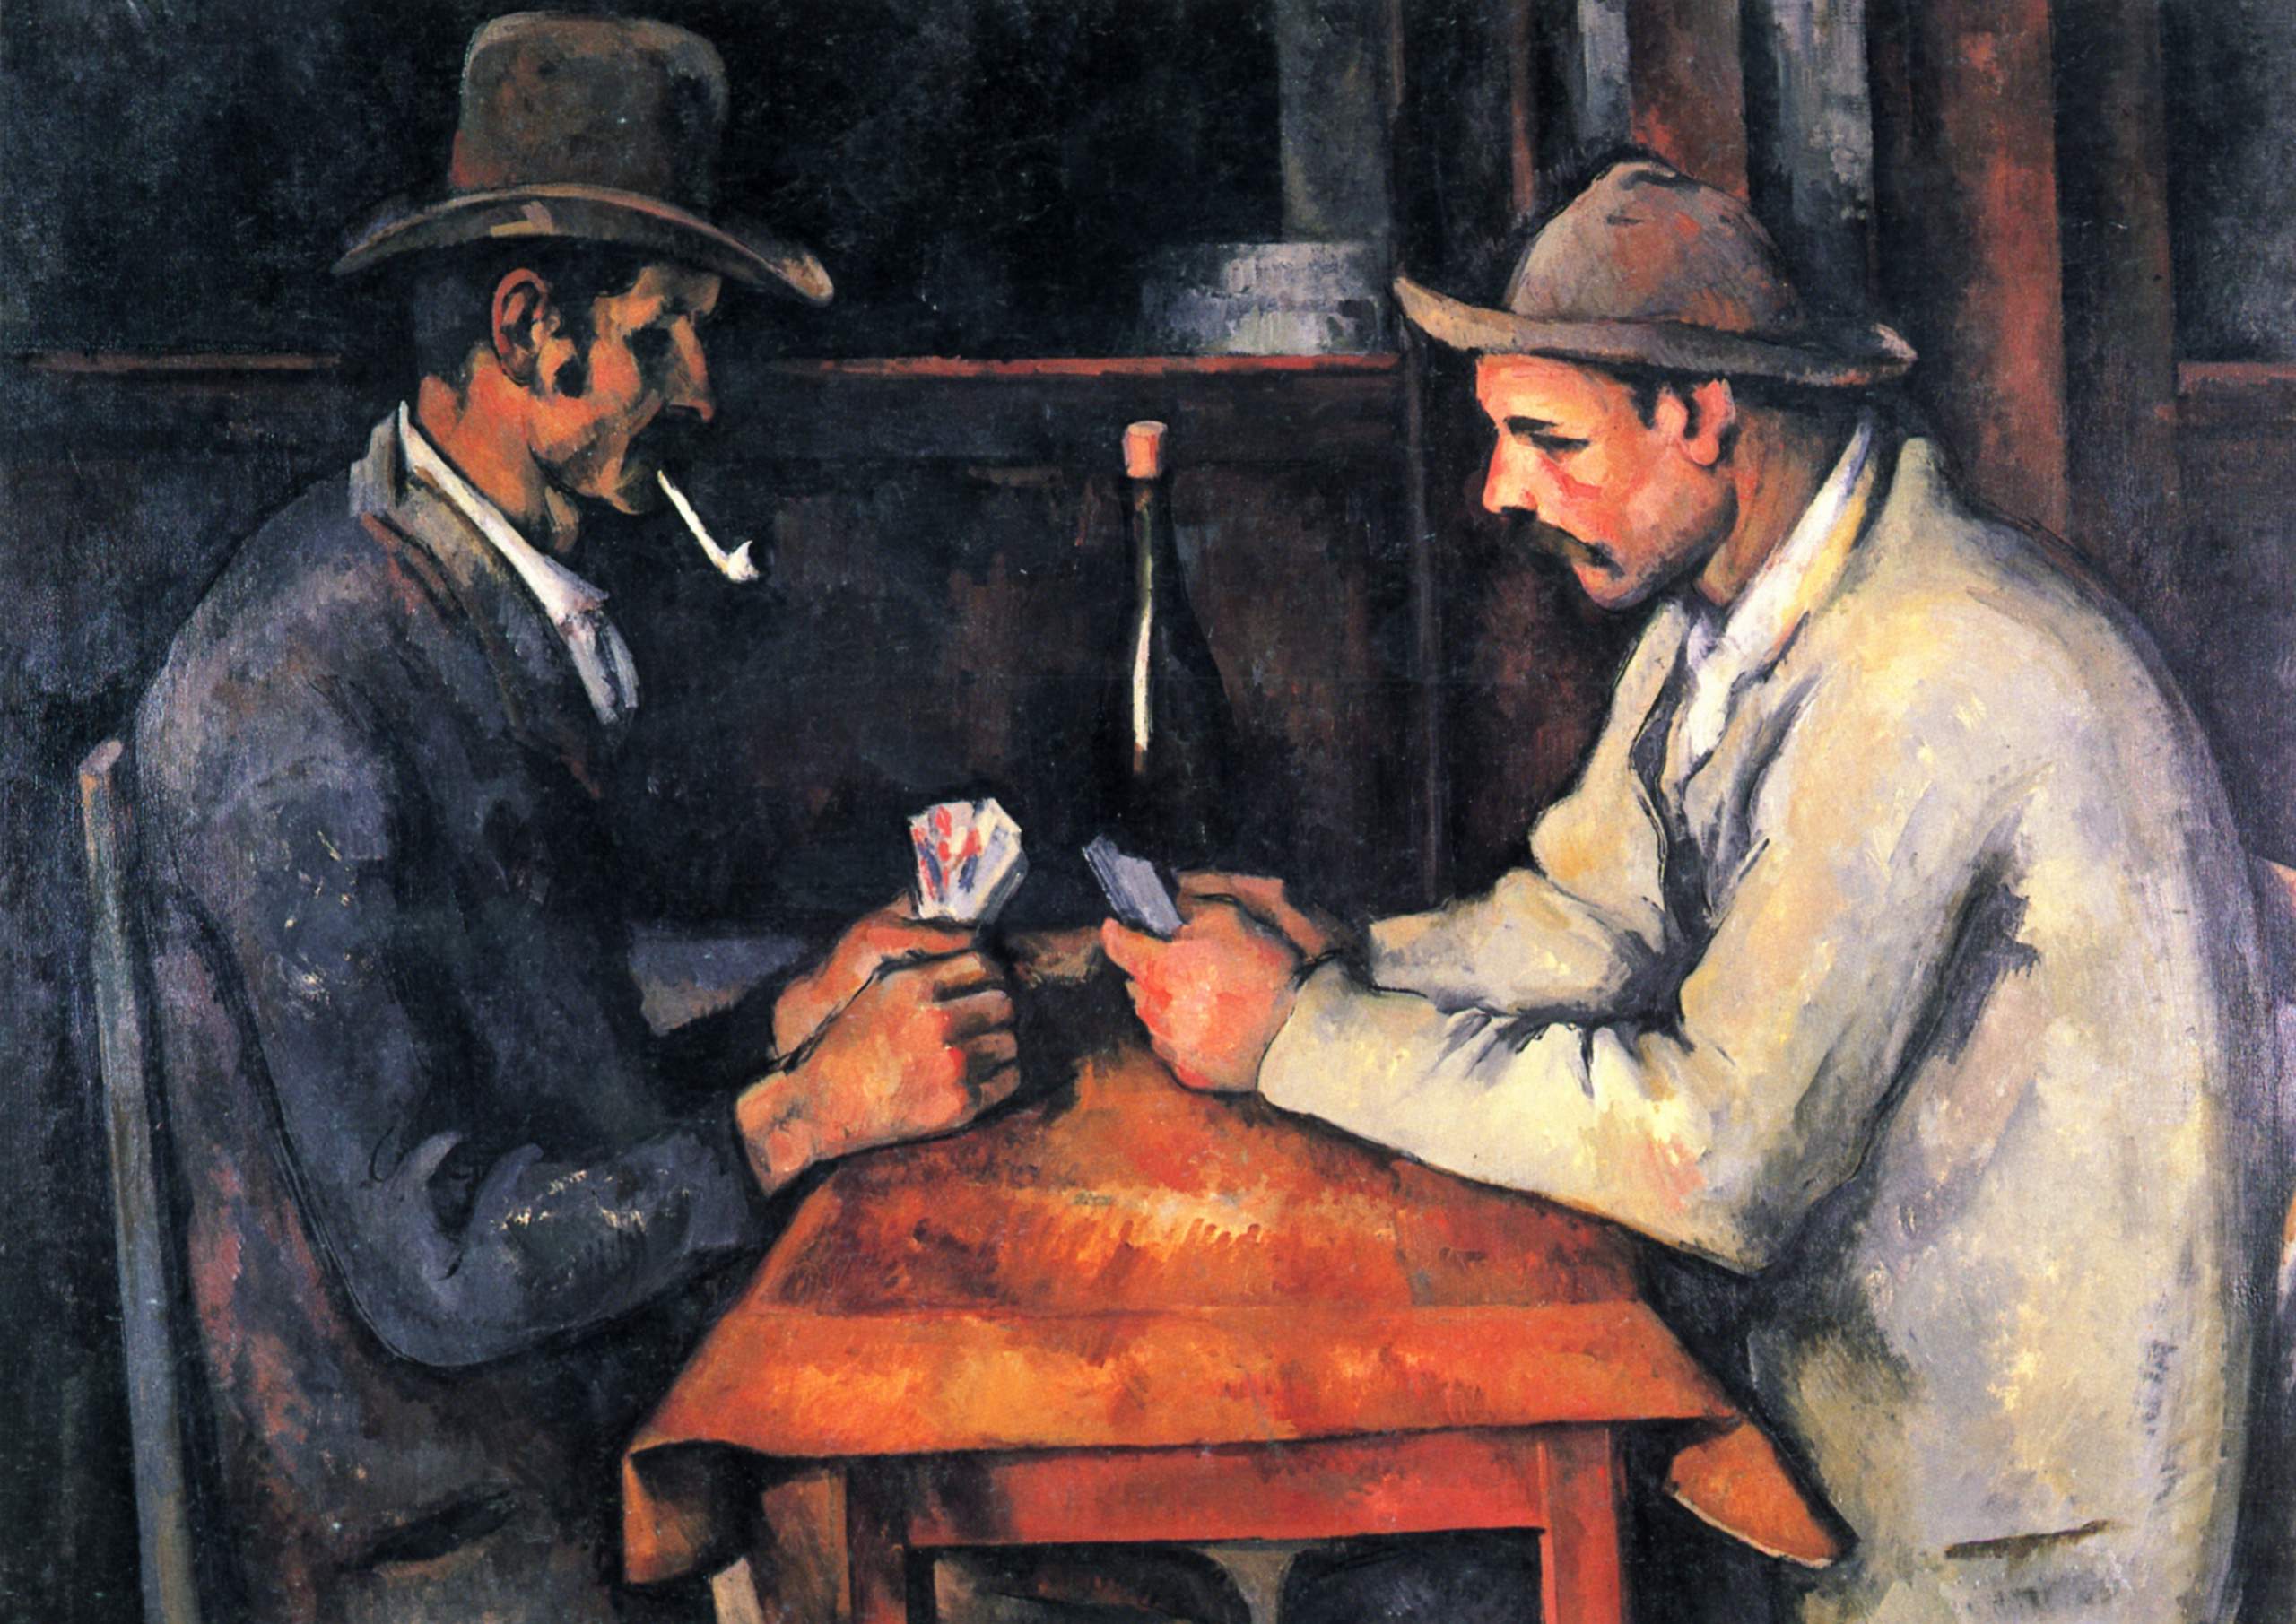 Paul Cézanne - The Card Players 1892-1893